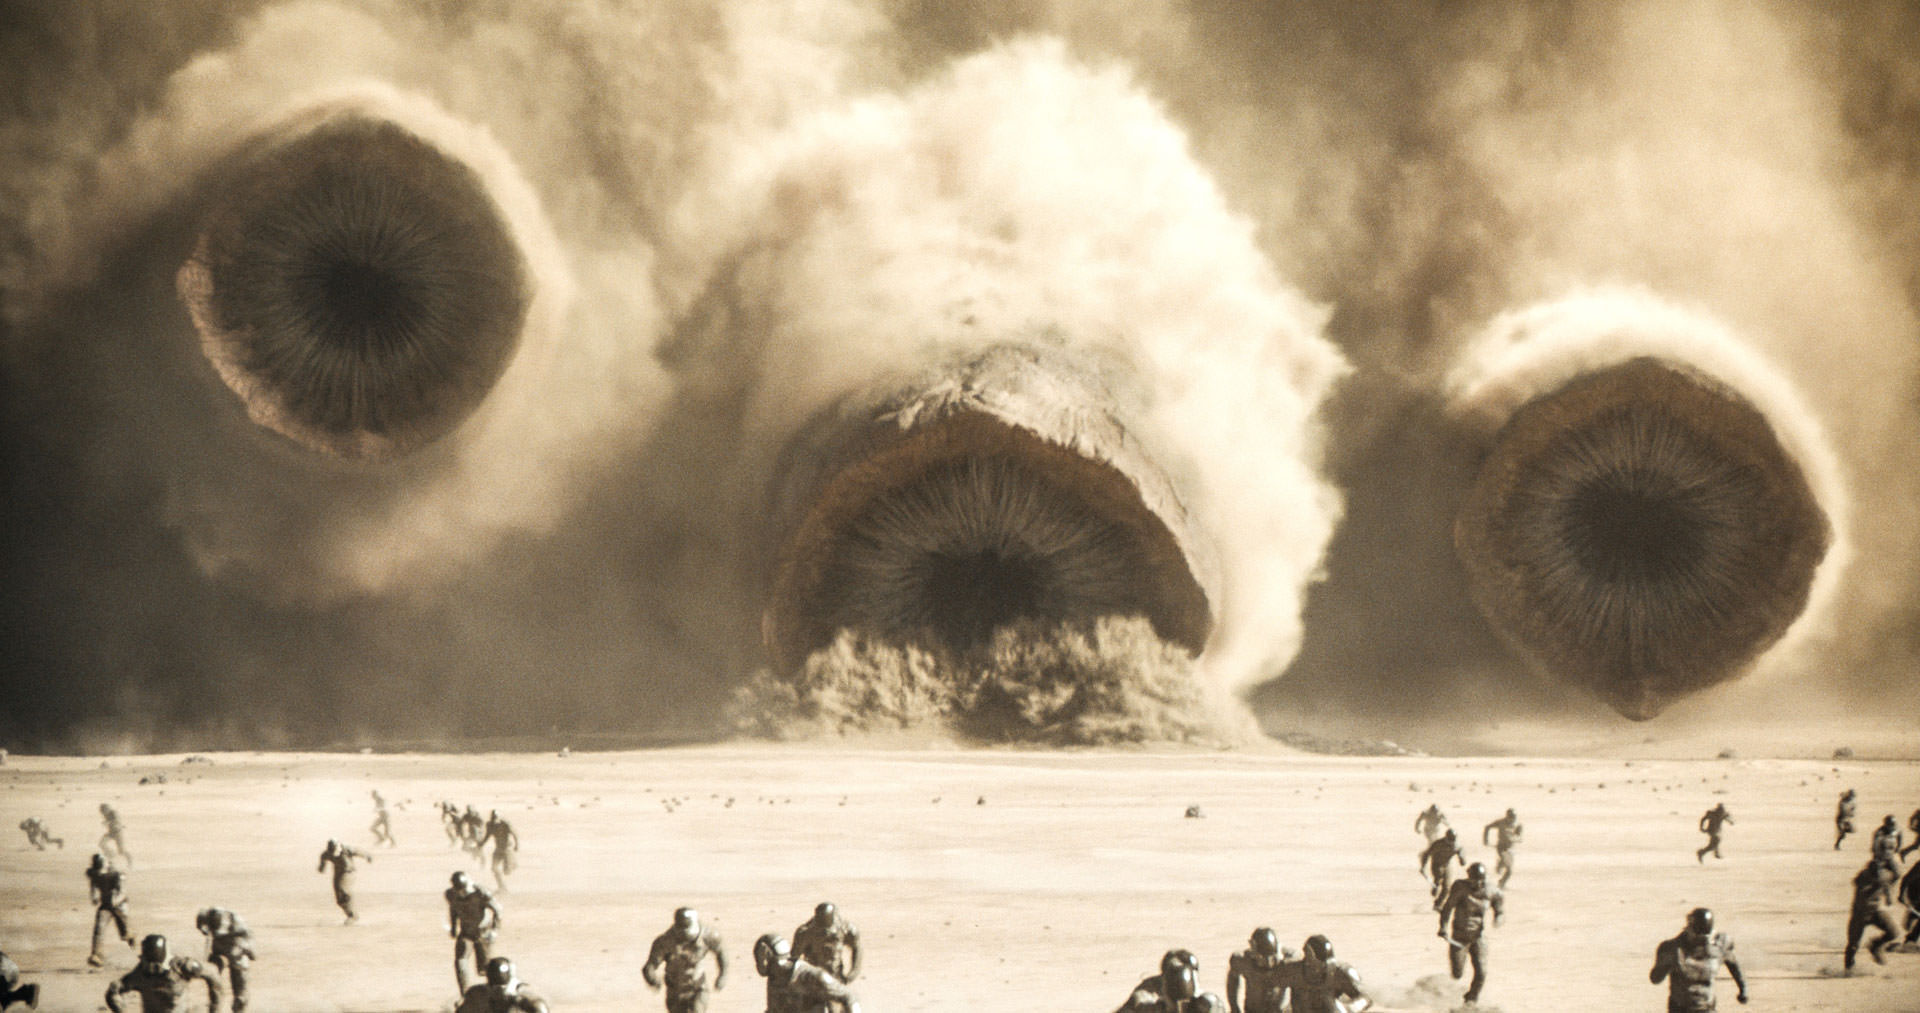 حمله کرم شنی در فیلم Dune 2